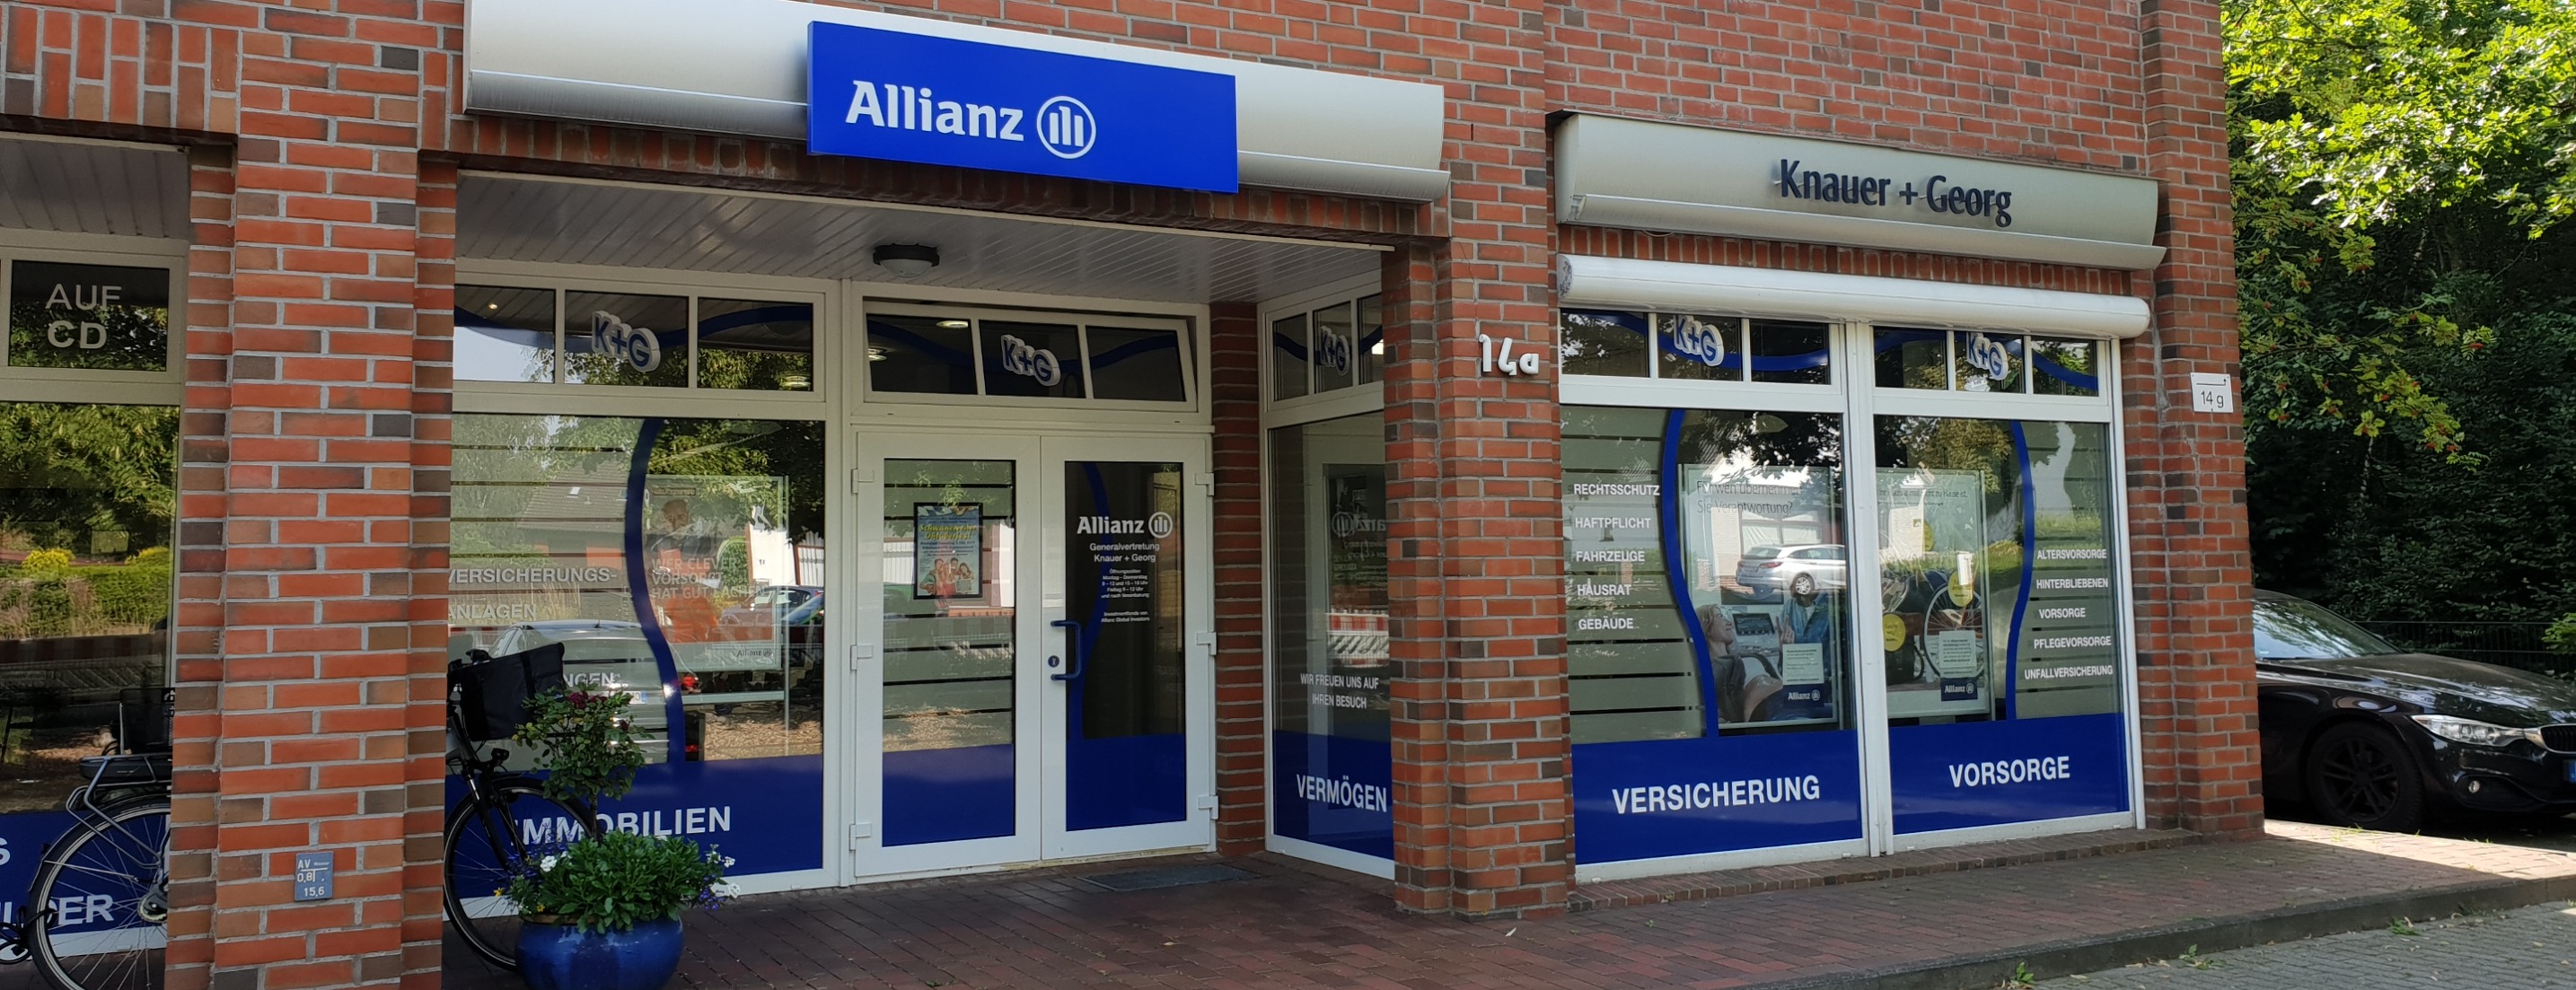 Allianz Versicherung Patrick Georg Schwanewede - Generalvertretung Knauer + Georg